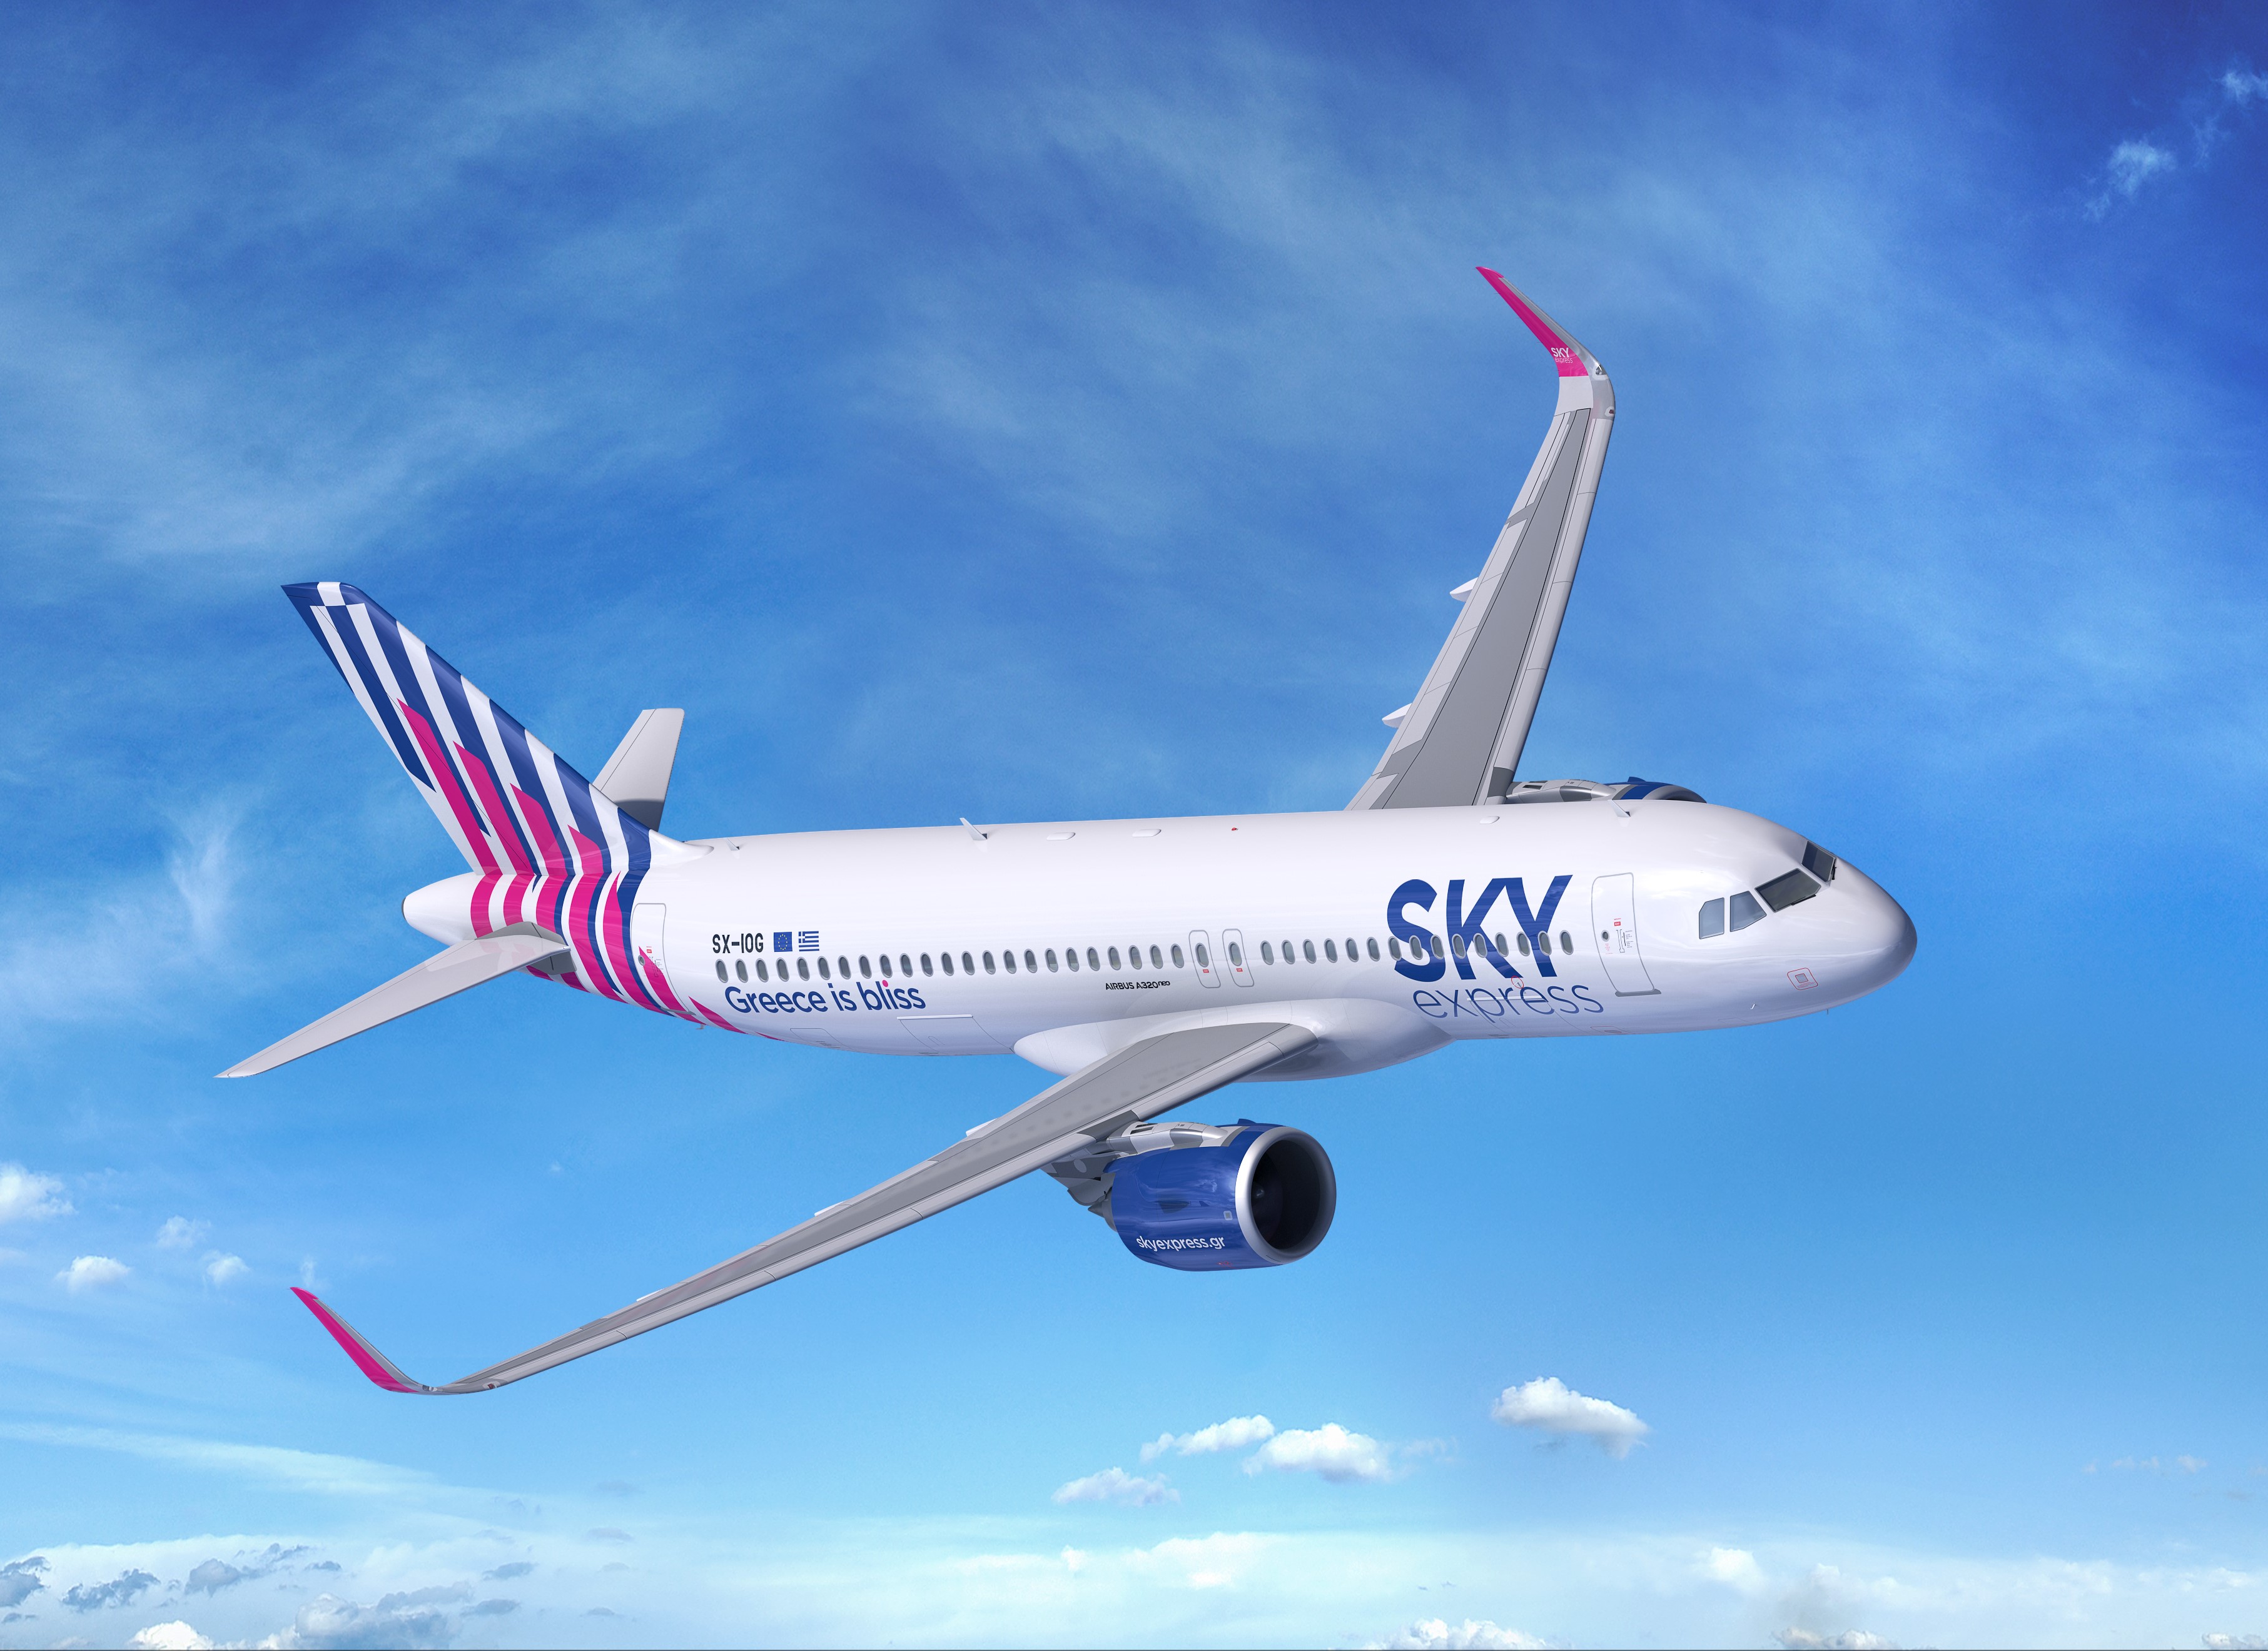 SKY express s'est lancée en 2020 dans la desserte de lignes internationales grâce à l’achat de 6 Airbus A320 NEO neufs /photo SE